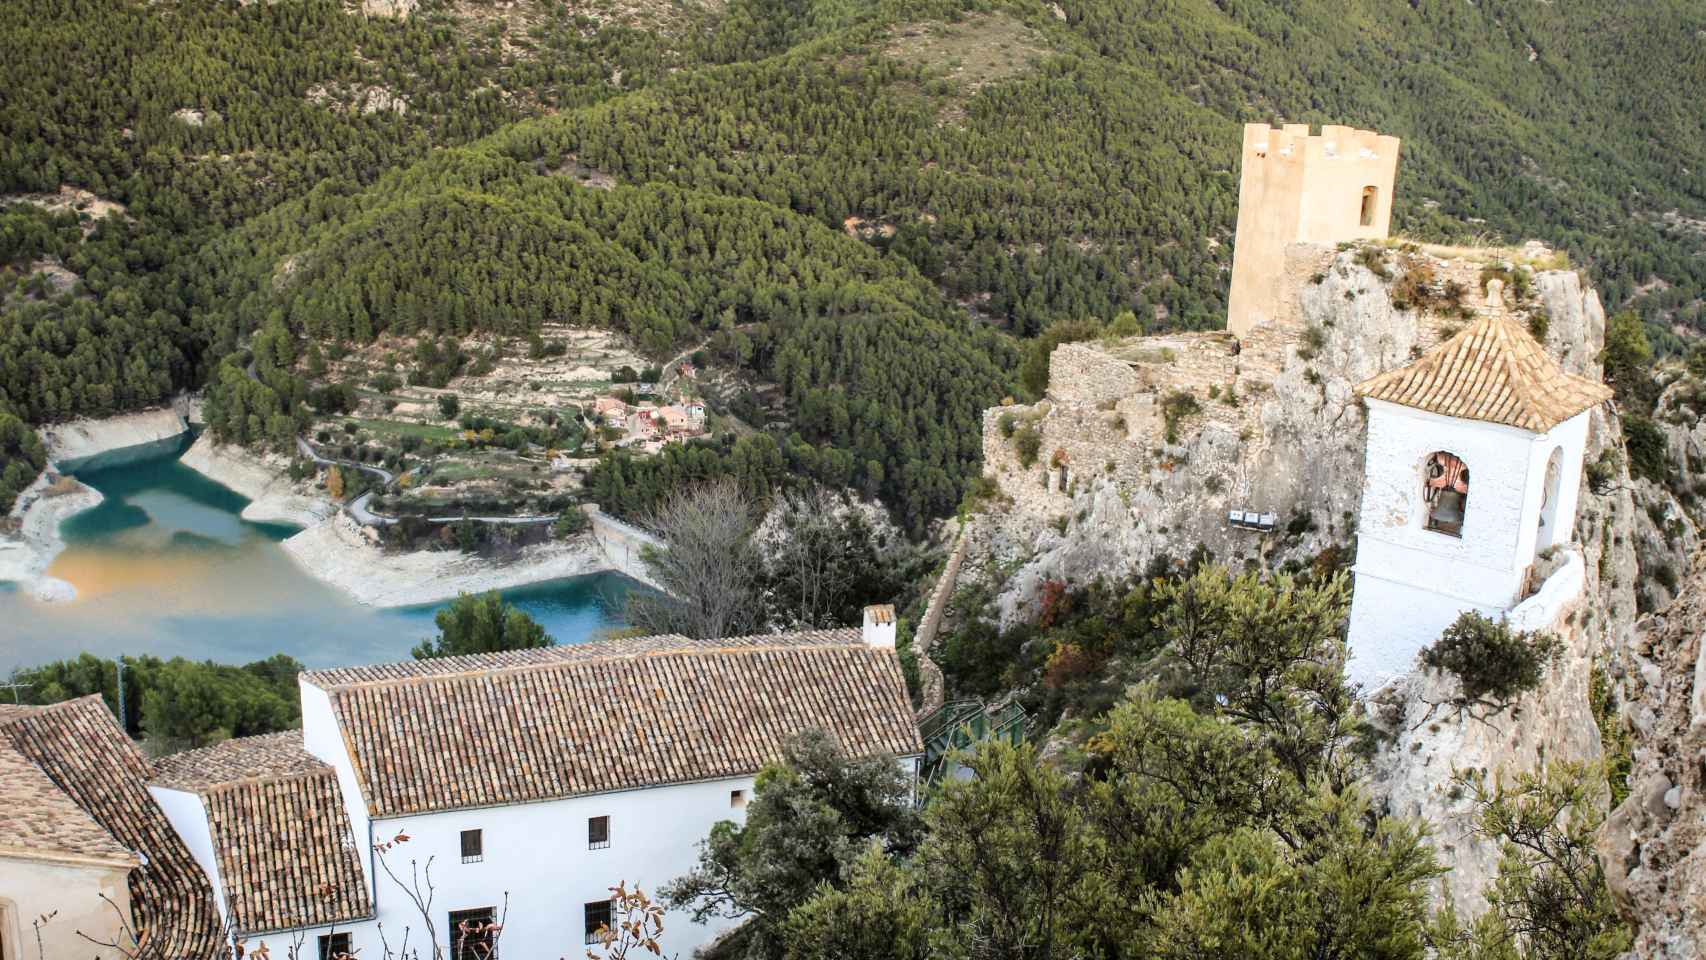 Vistas al pueblo de Guadalest y su embalse, en una imagen de 'Shutterstock'.